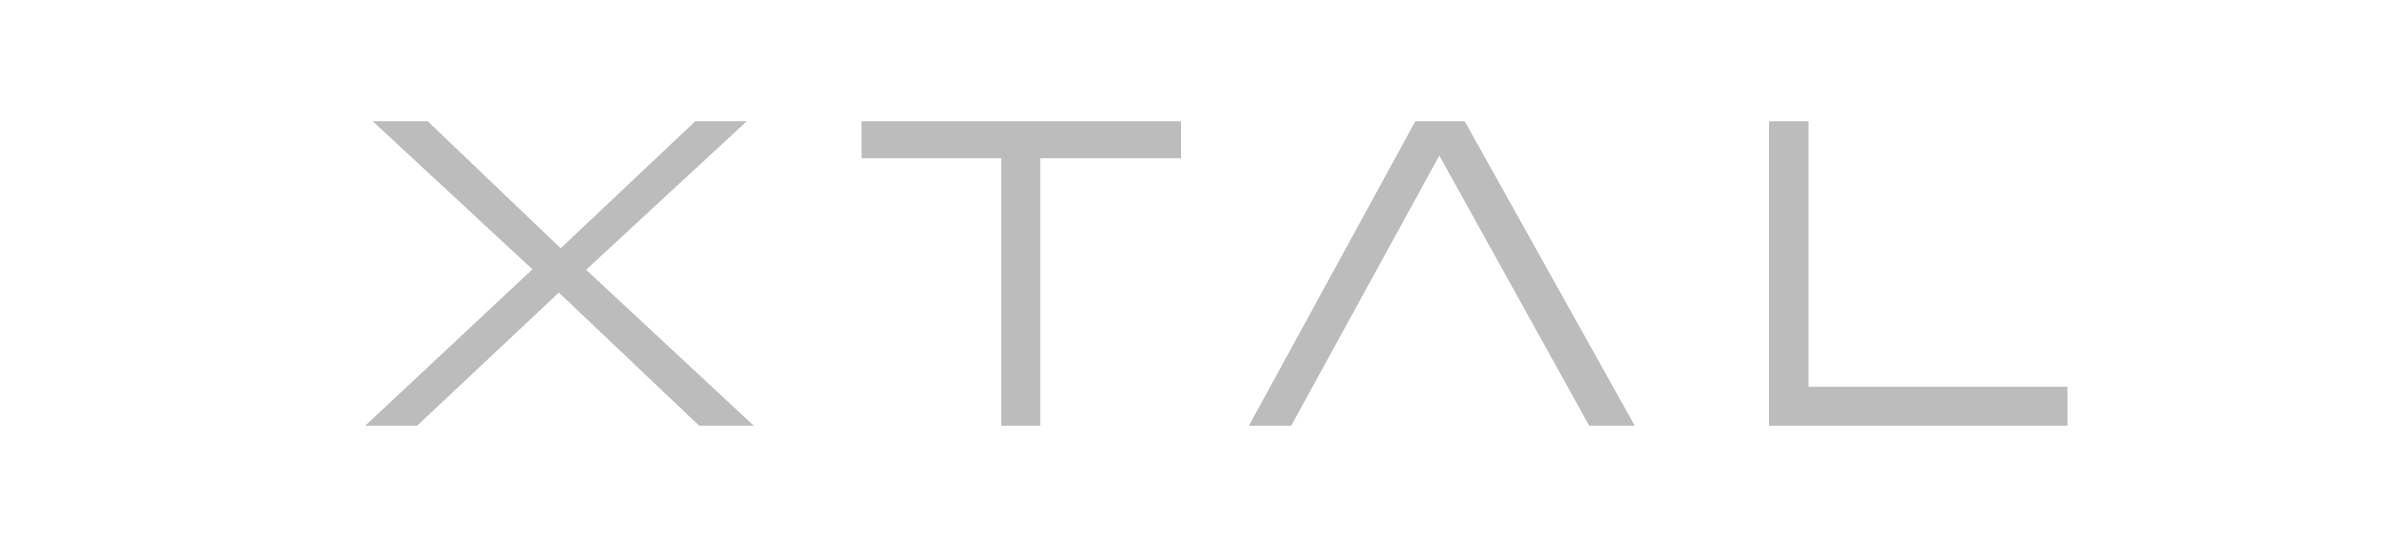 xtal logo - Vrgineers.com